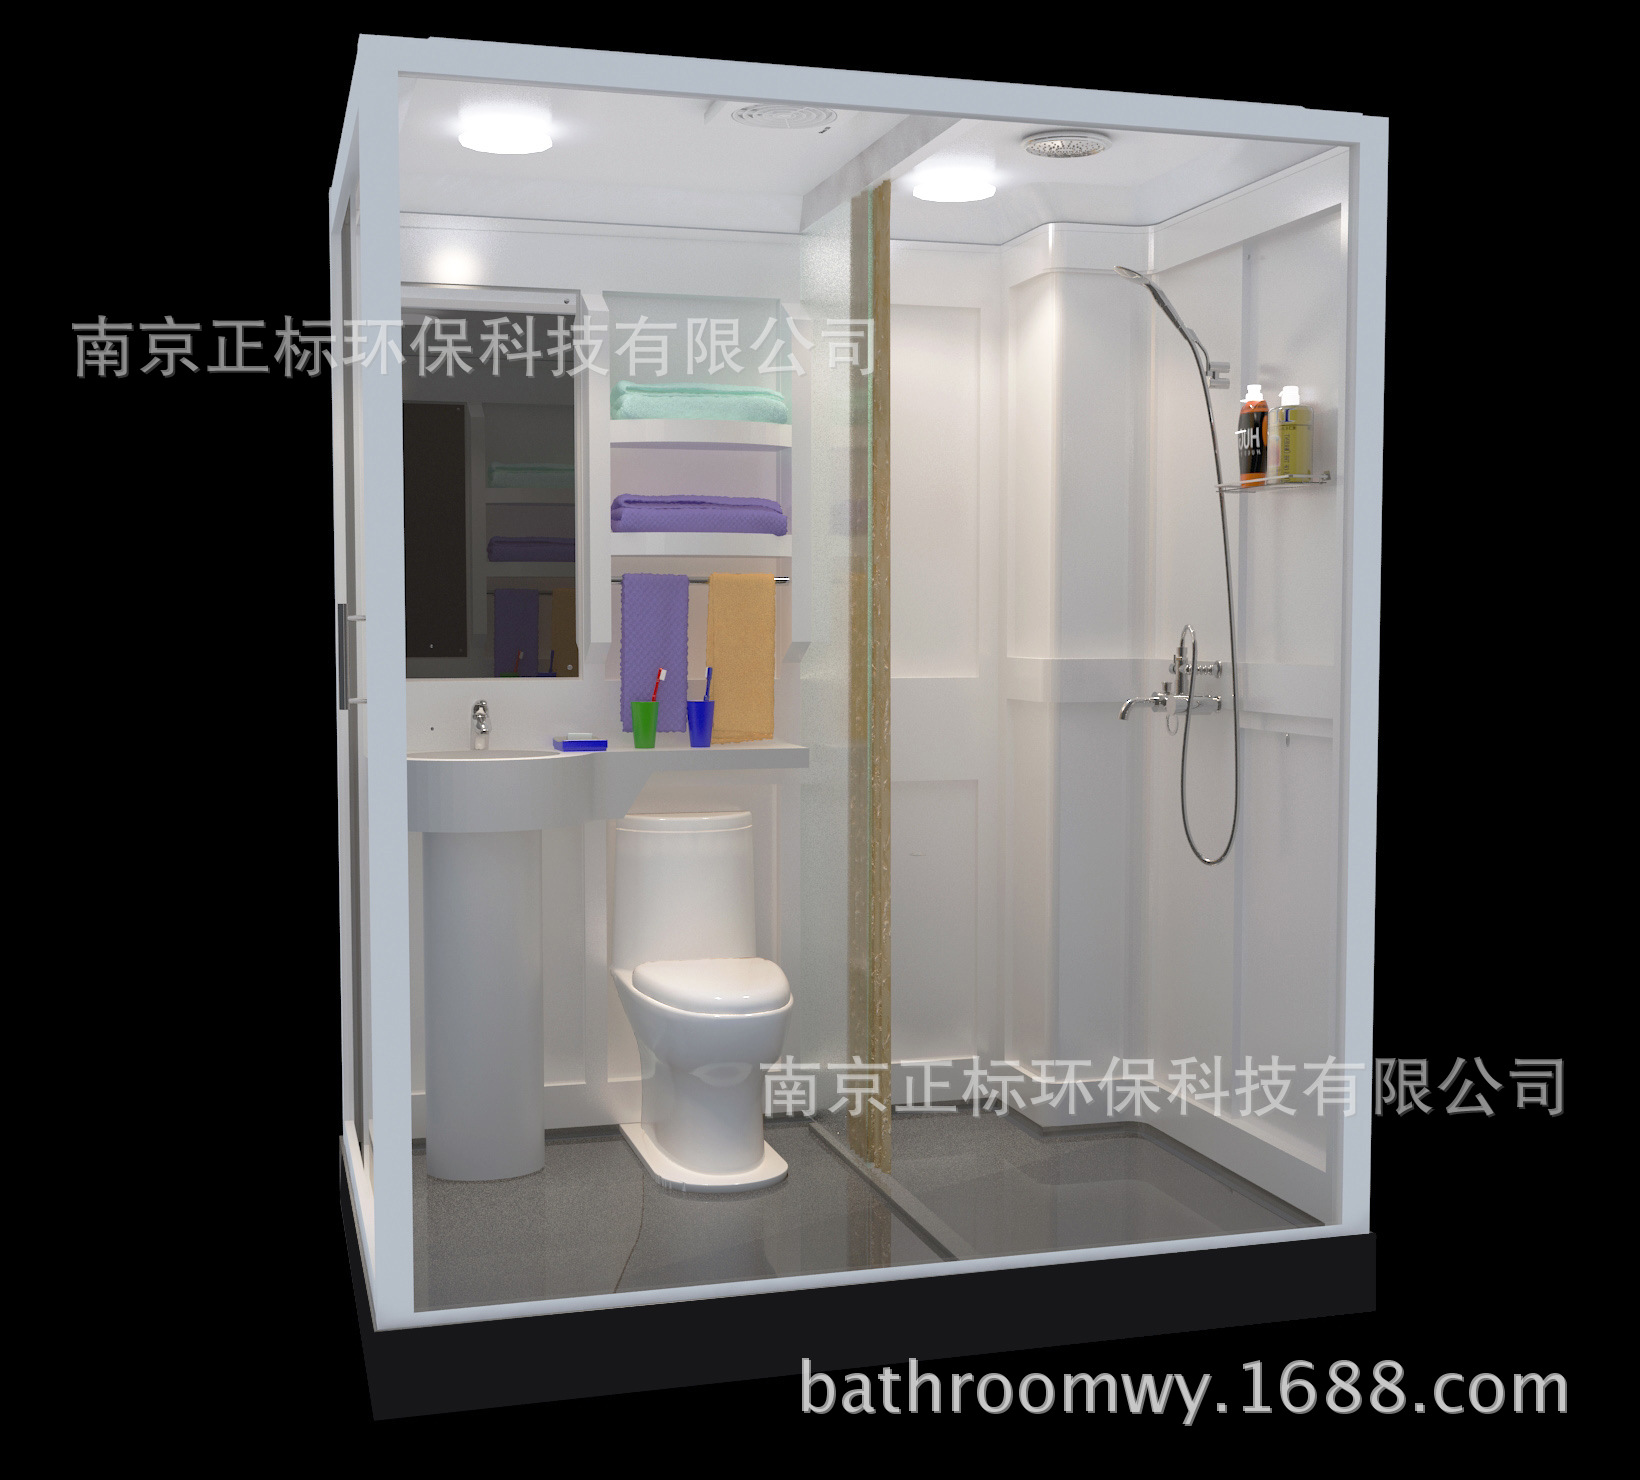 BSM1319集成卫生间宾馆酒店整体淋浴房公寓一体式卫浴厂家直销